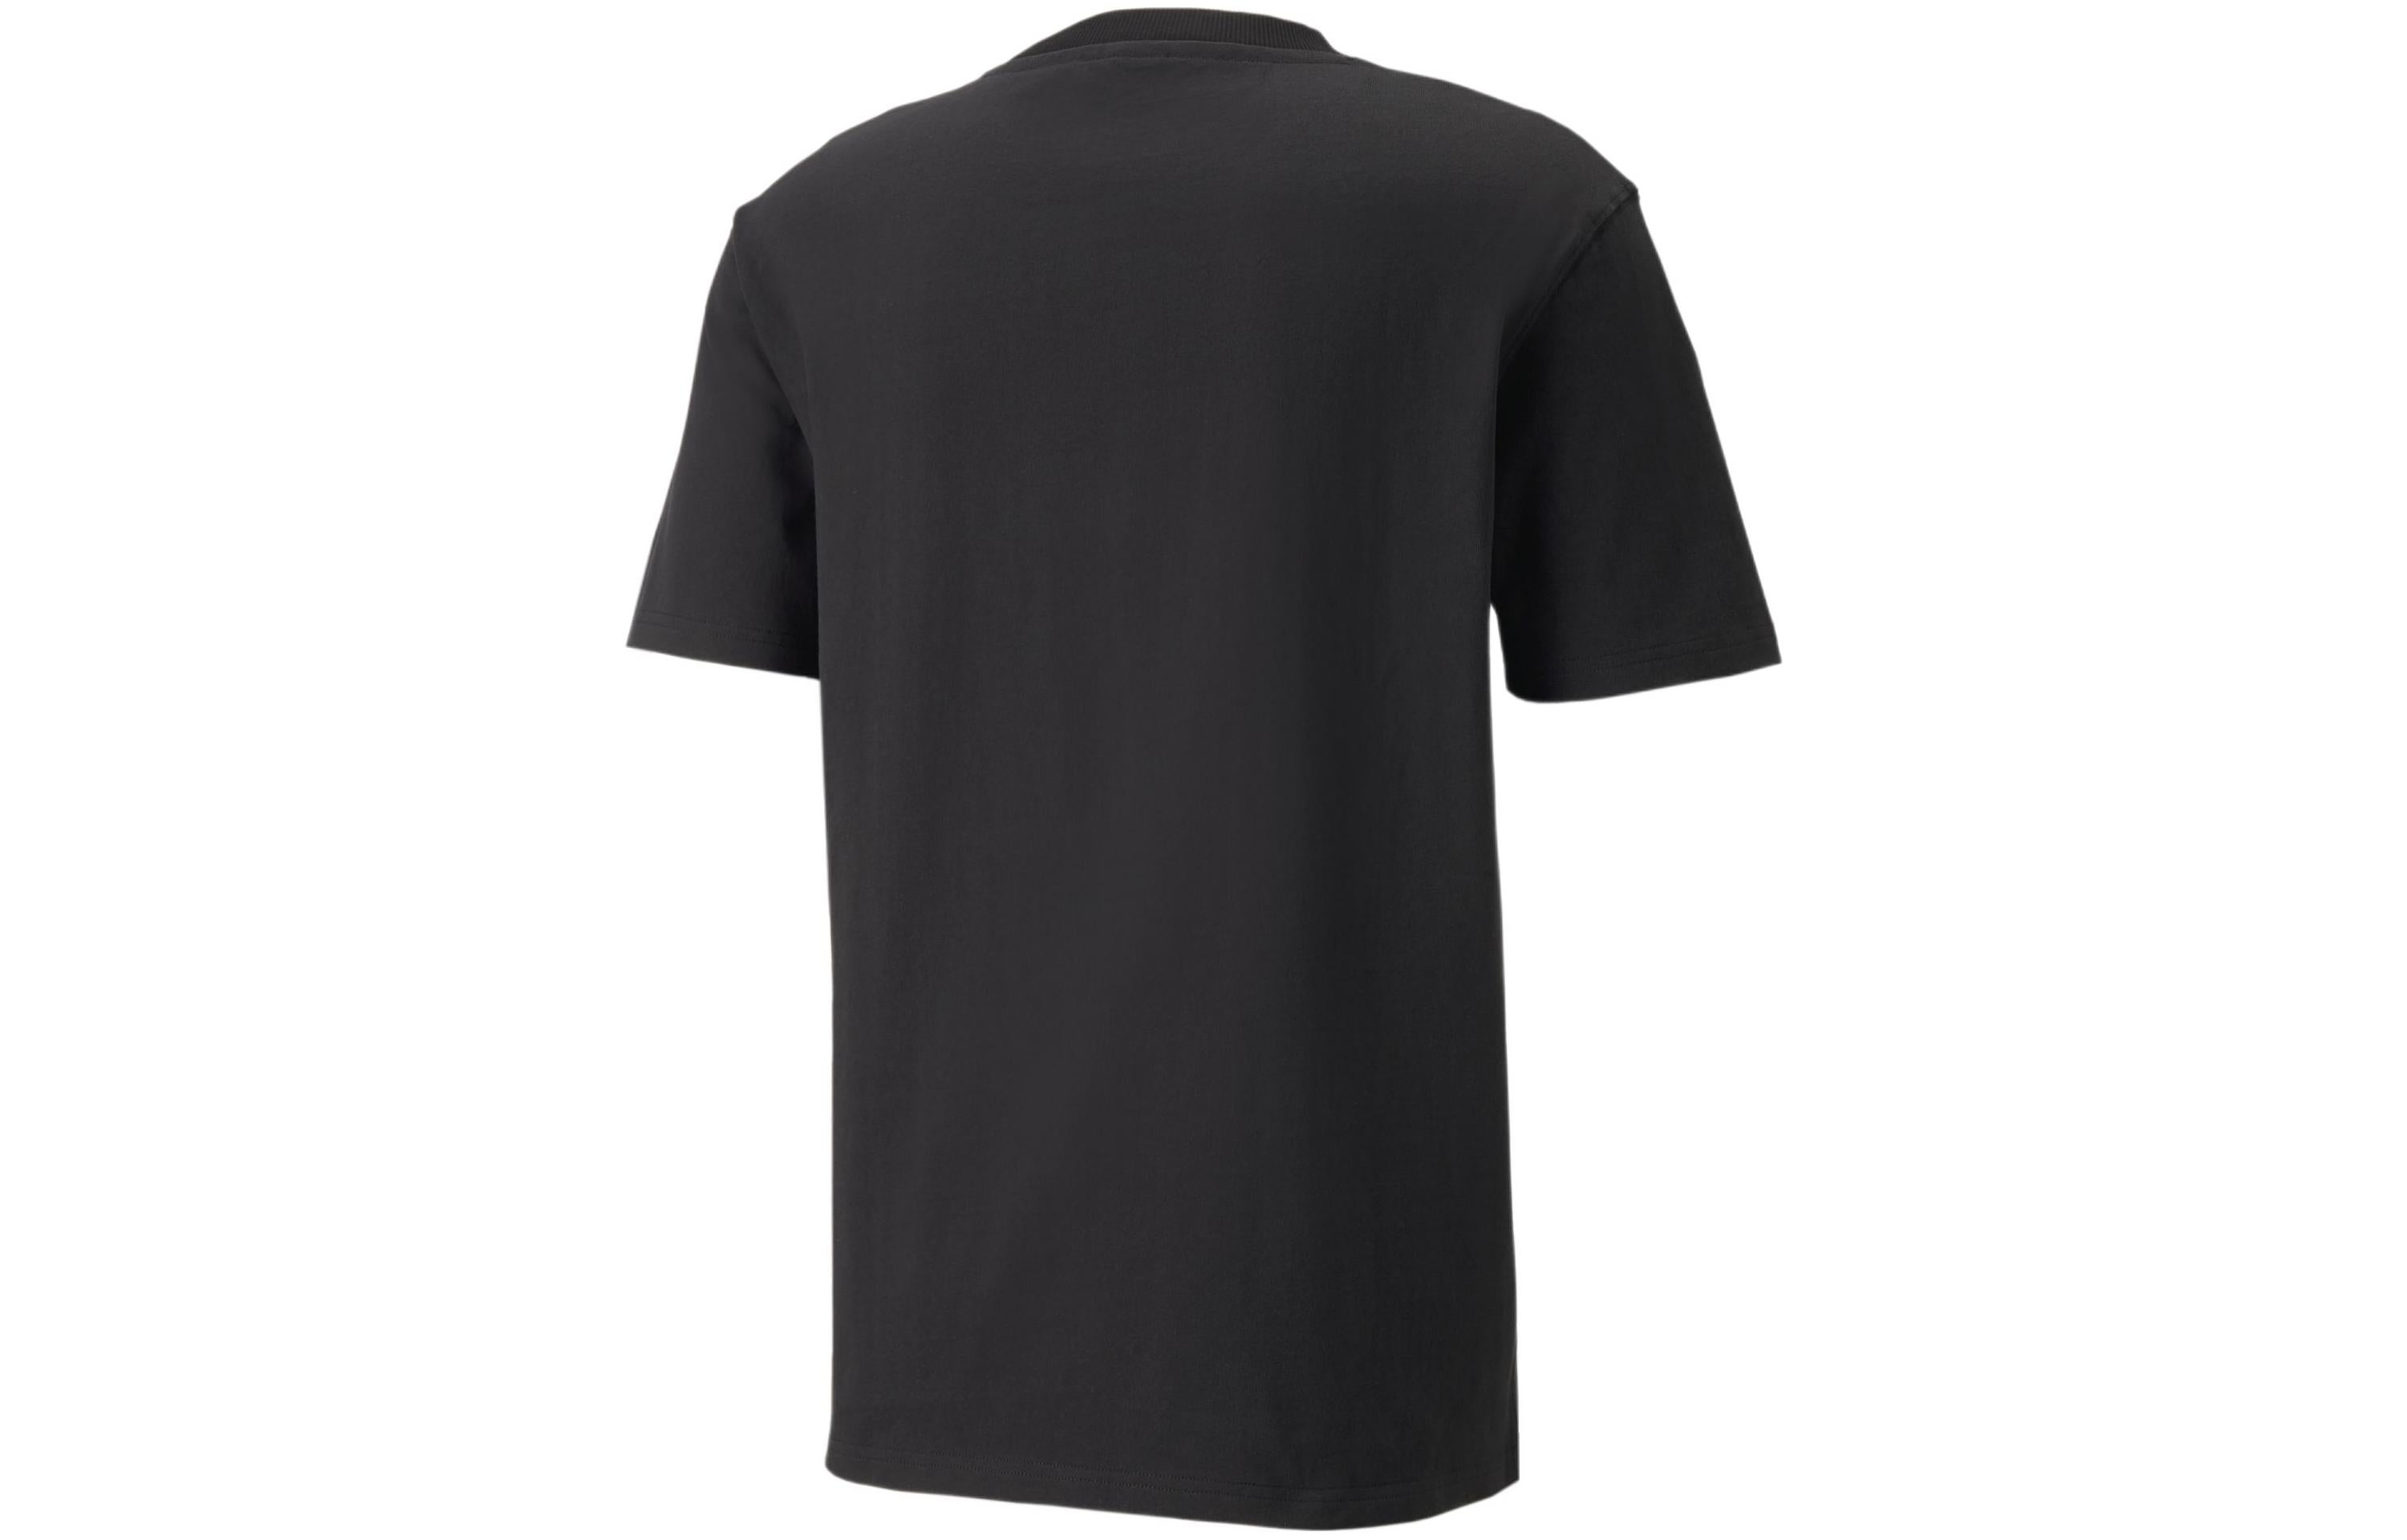 PUMA X AMI Graphic T-Shirt 'Black' 534070-01 - 2